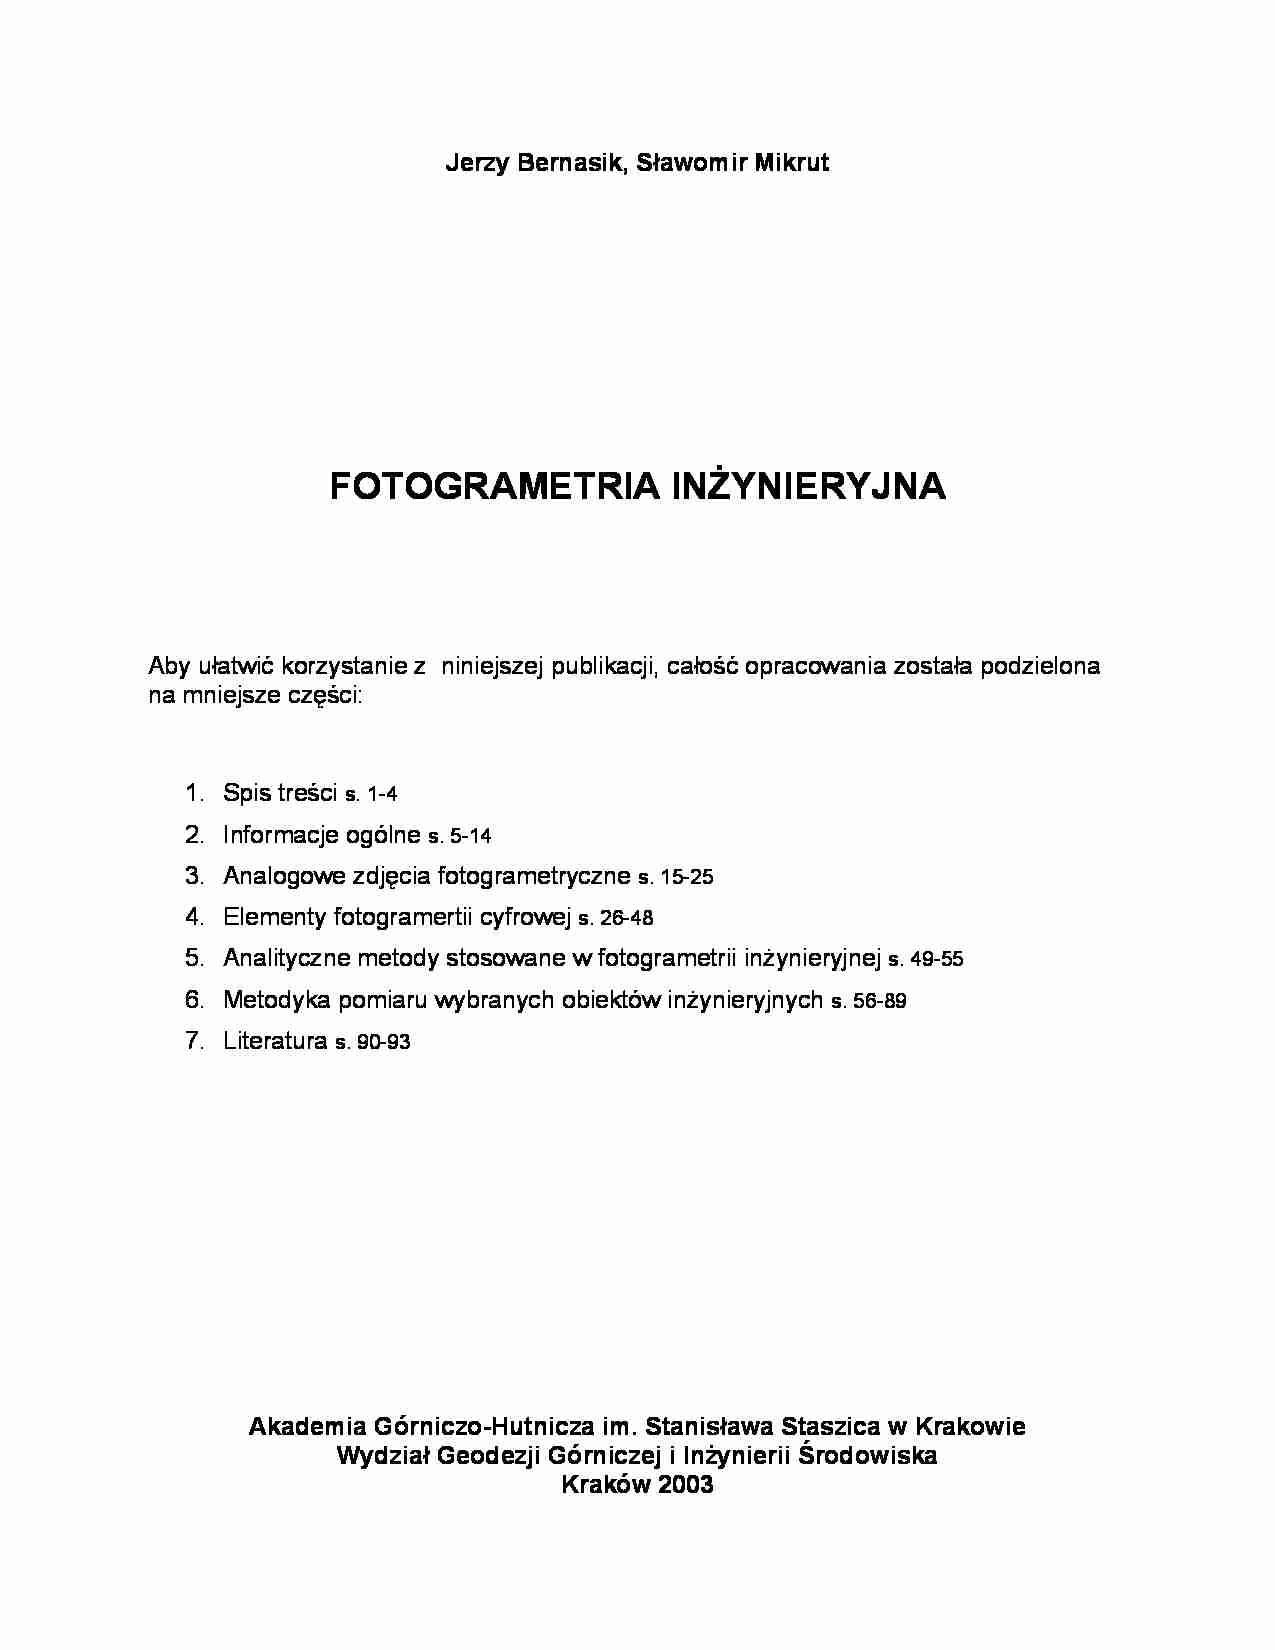 fotogrametria inżynieryjna wykład - strona 1